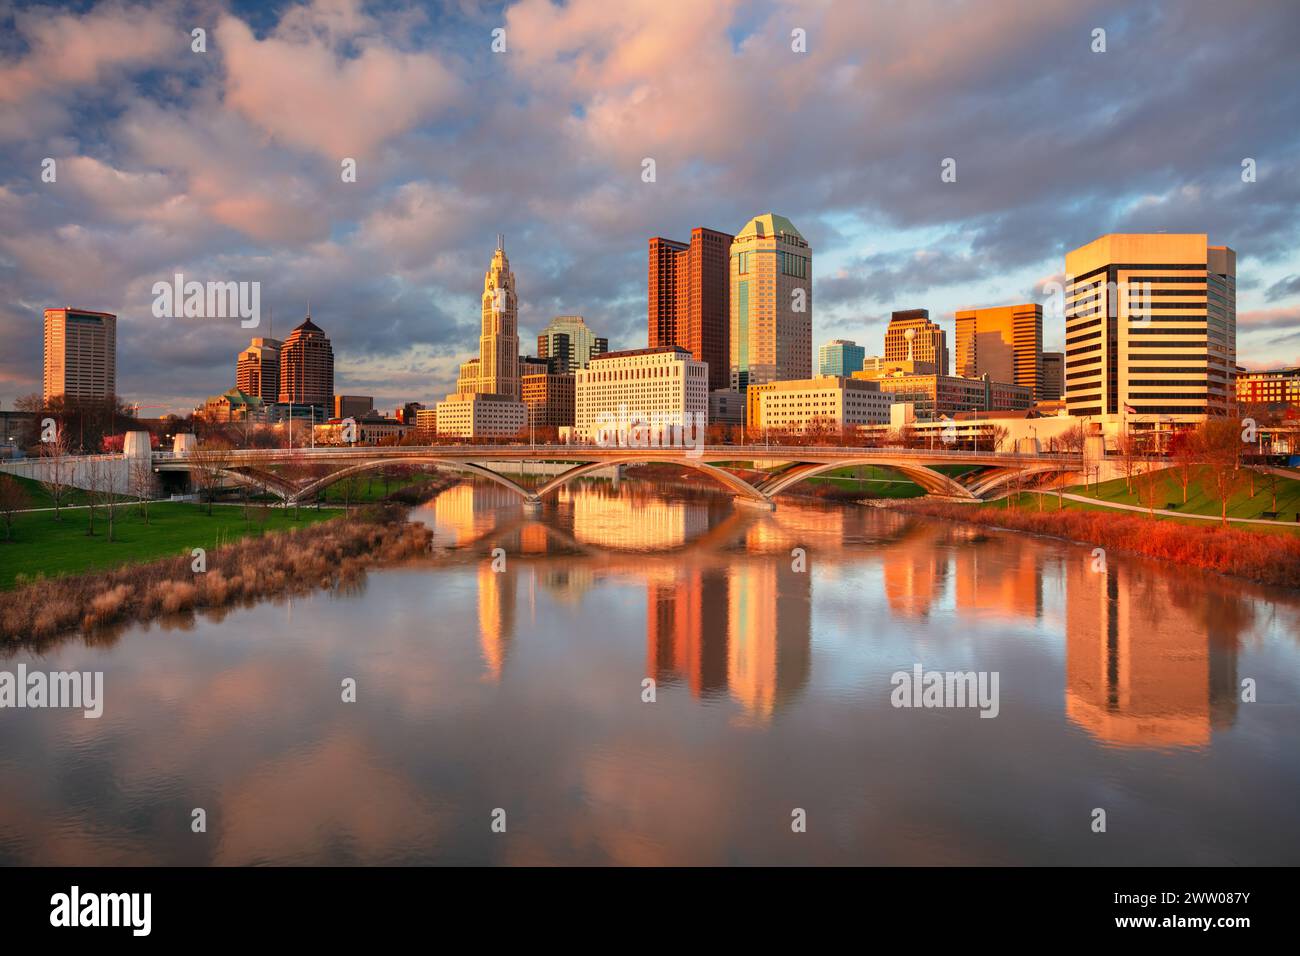 Columbus, Ohio, Stati Uniti. Immagine del paesaggio urbano di Columbus, Ohio, skyline del centro degli Stati Uniti con il riflesso della città nel fiume Scioto al tramonto primaverile. Foto Stock